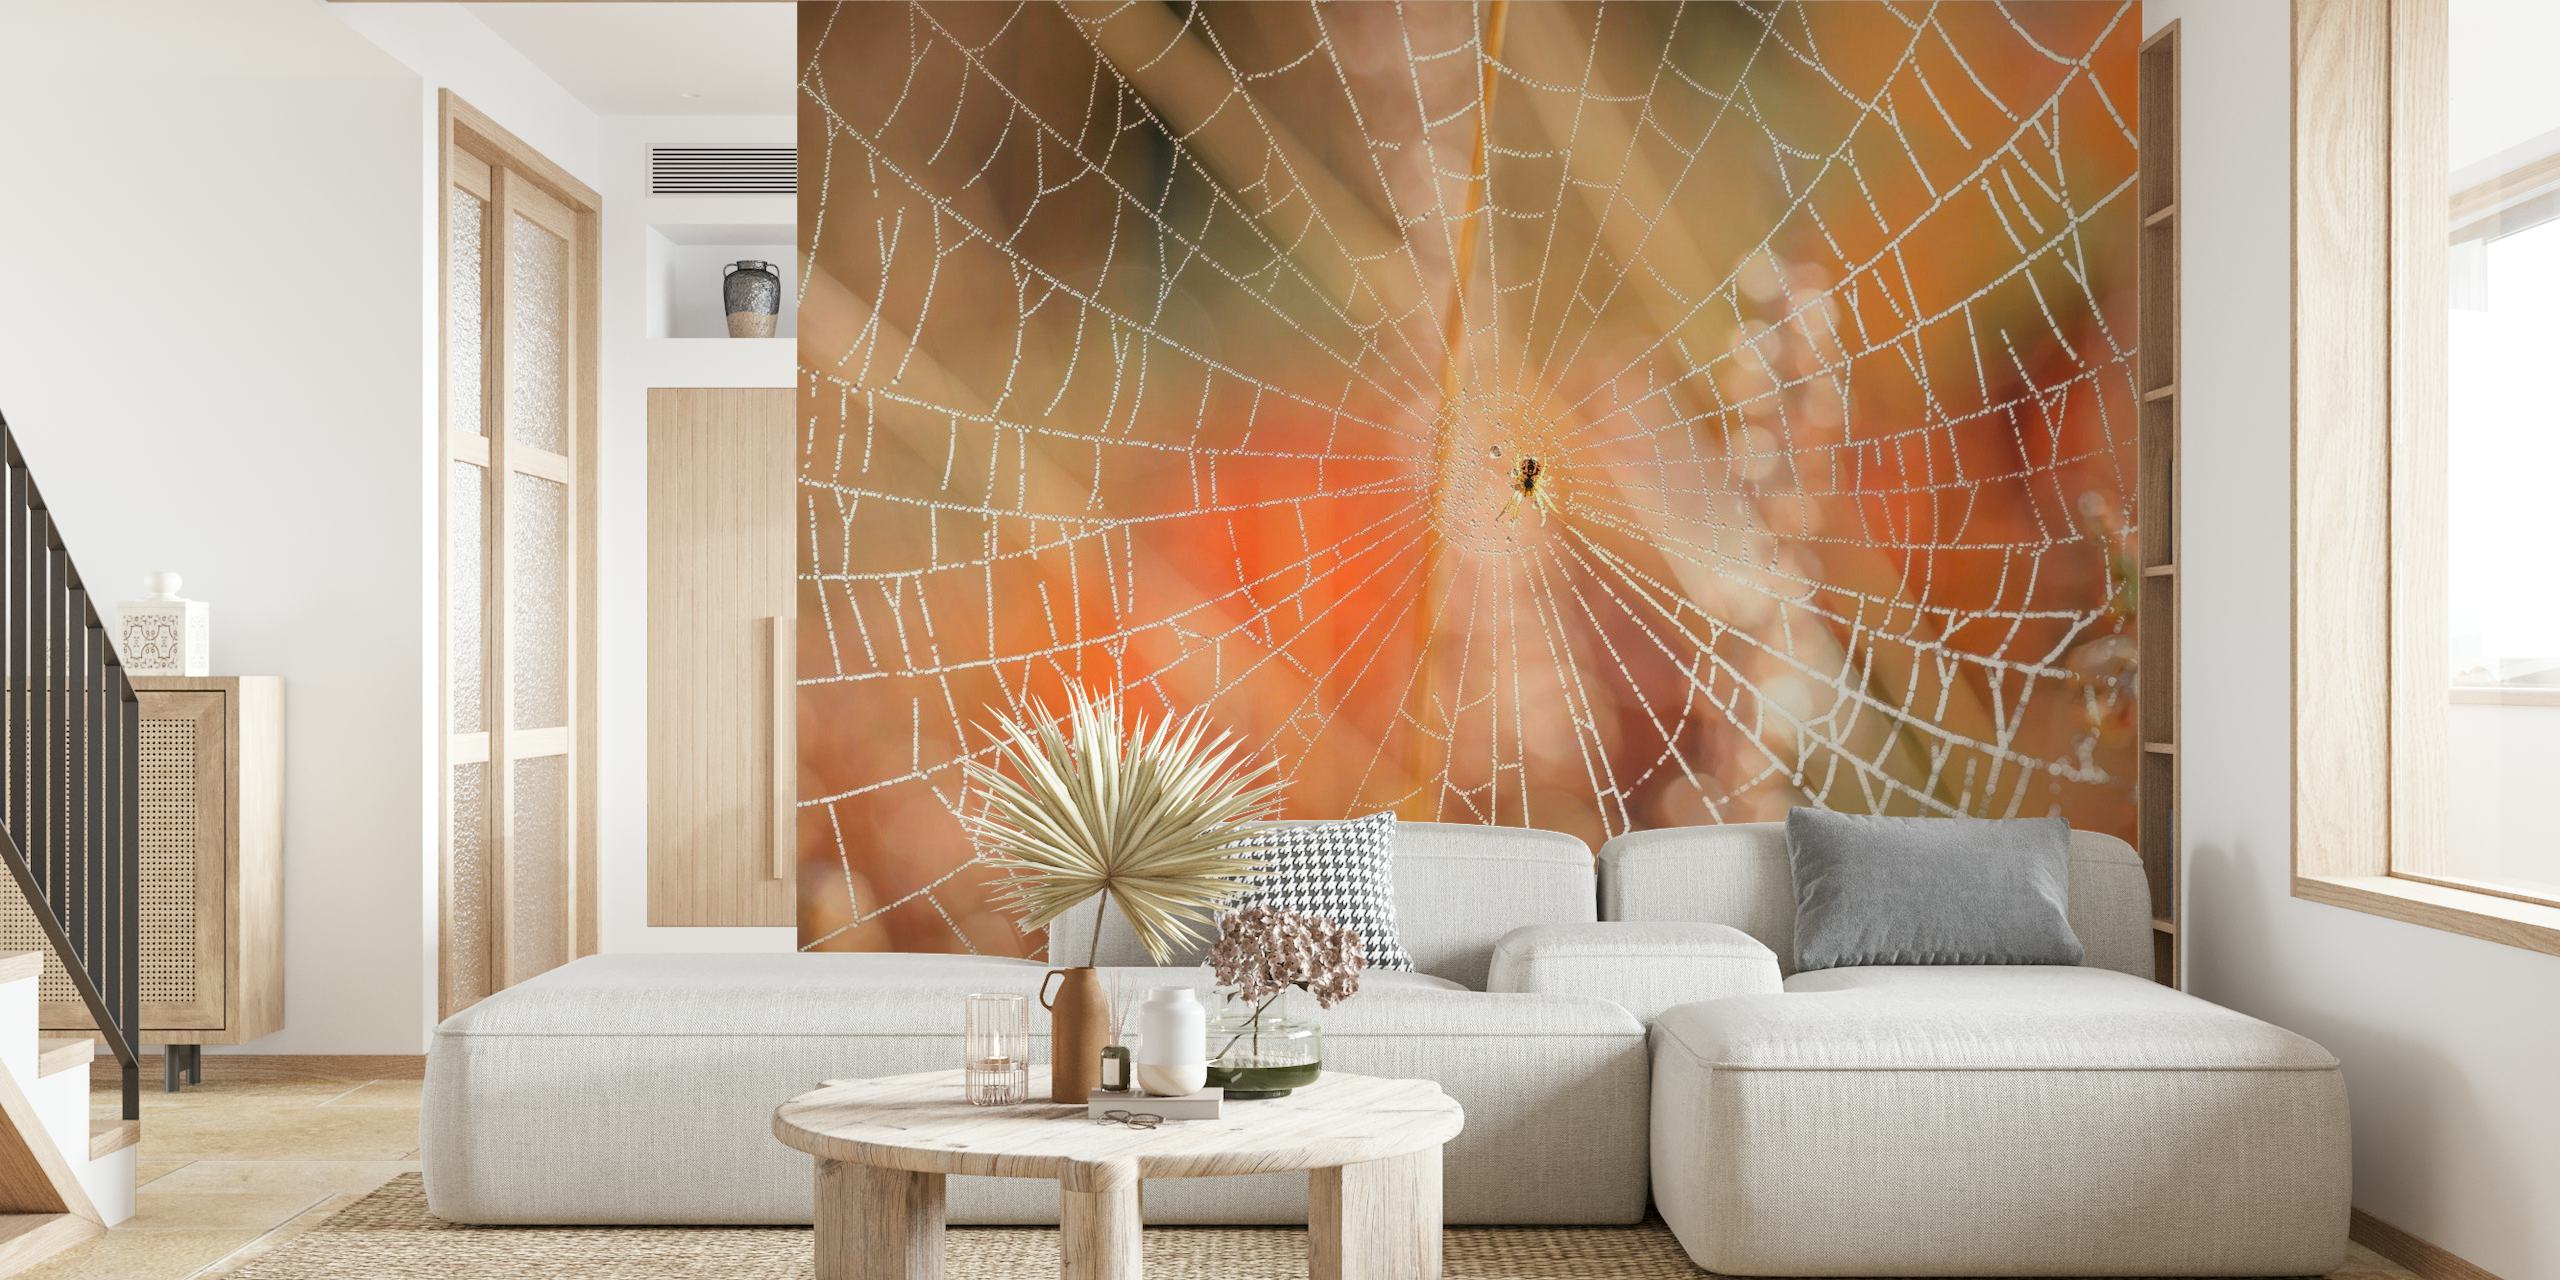 Indviklet edderkoppespind vægmaleri med morgendug